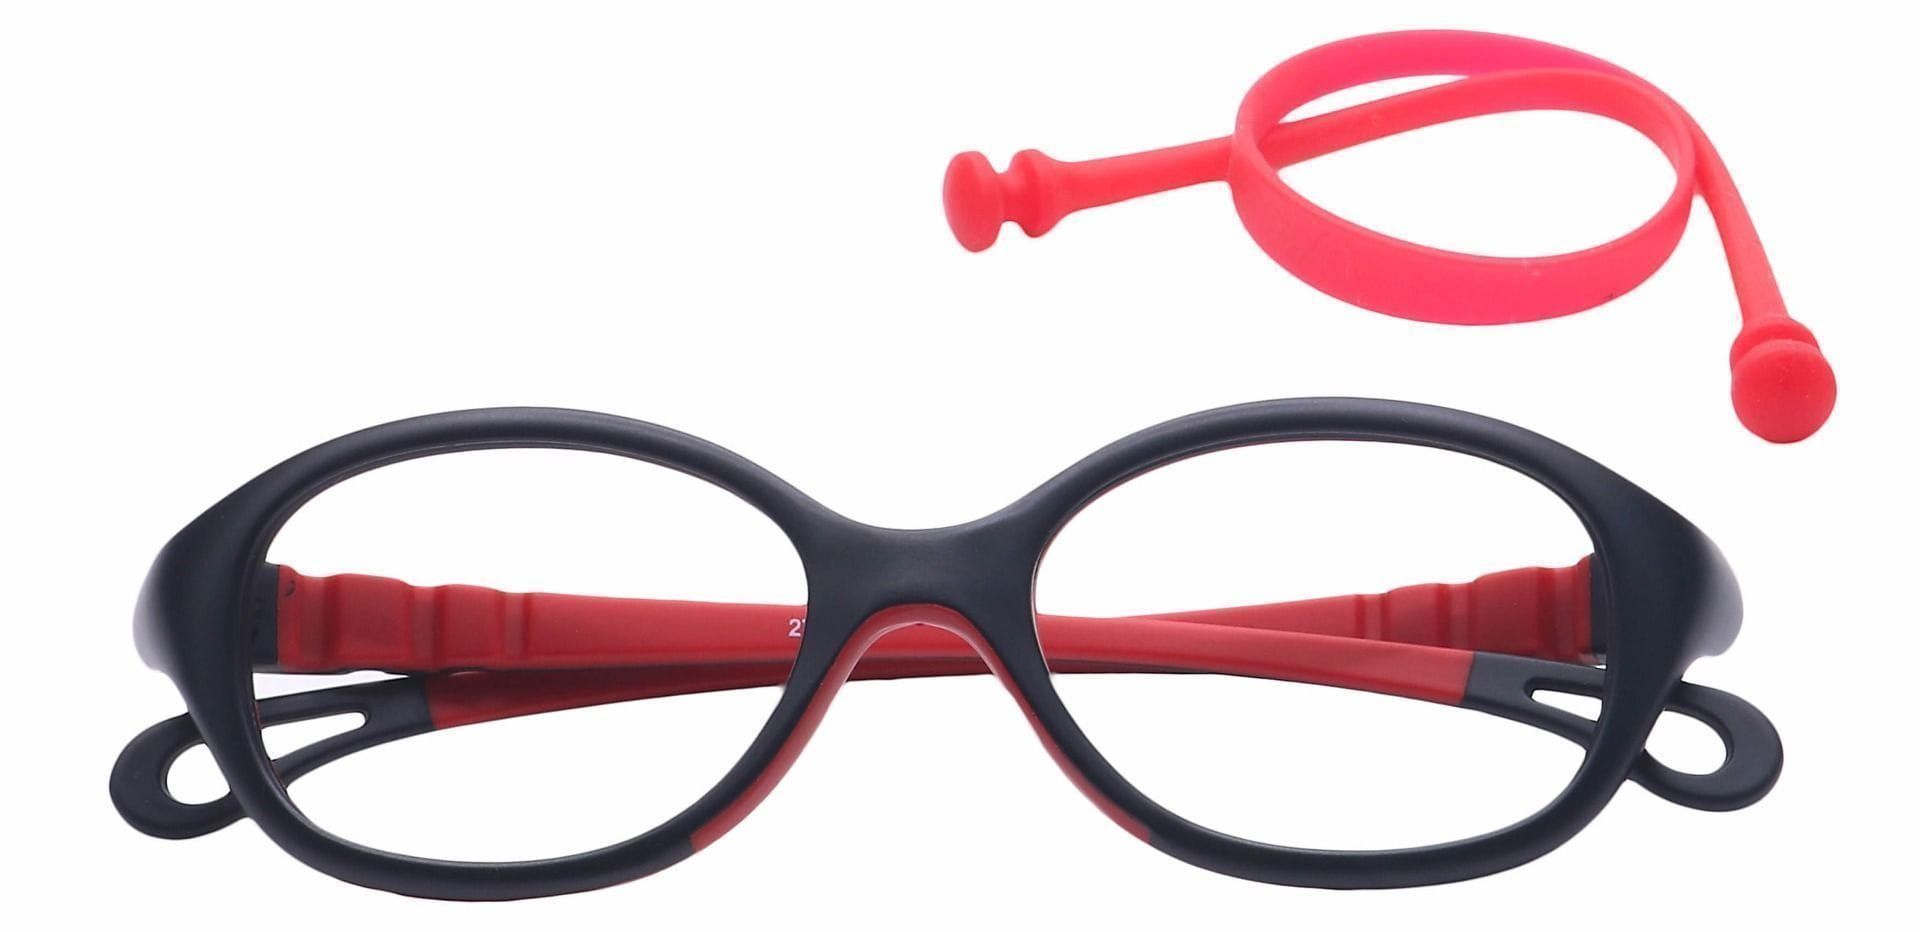 Quirk Oval Non-Rx Glasses - Black